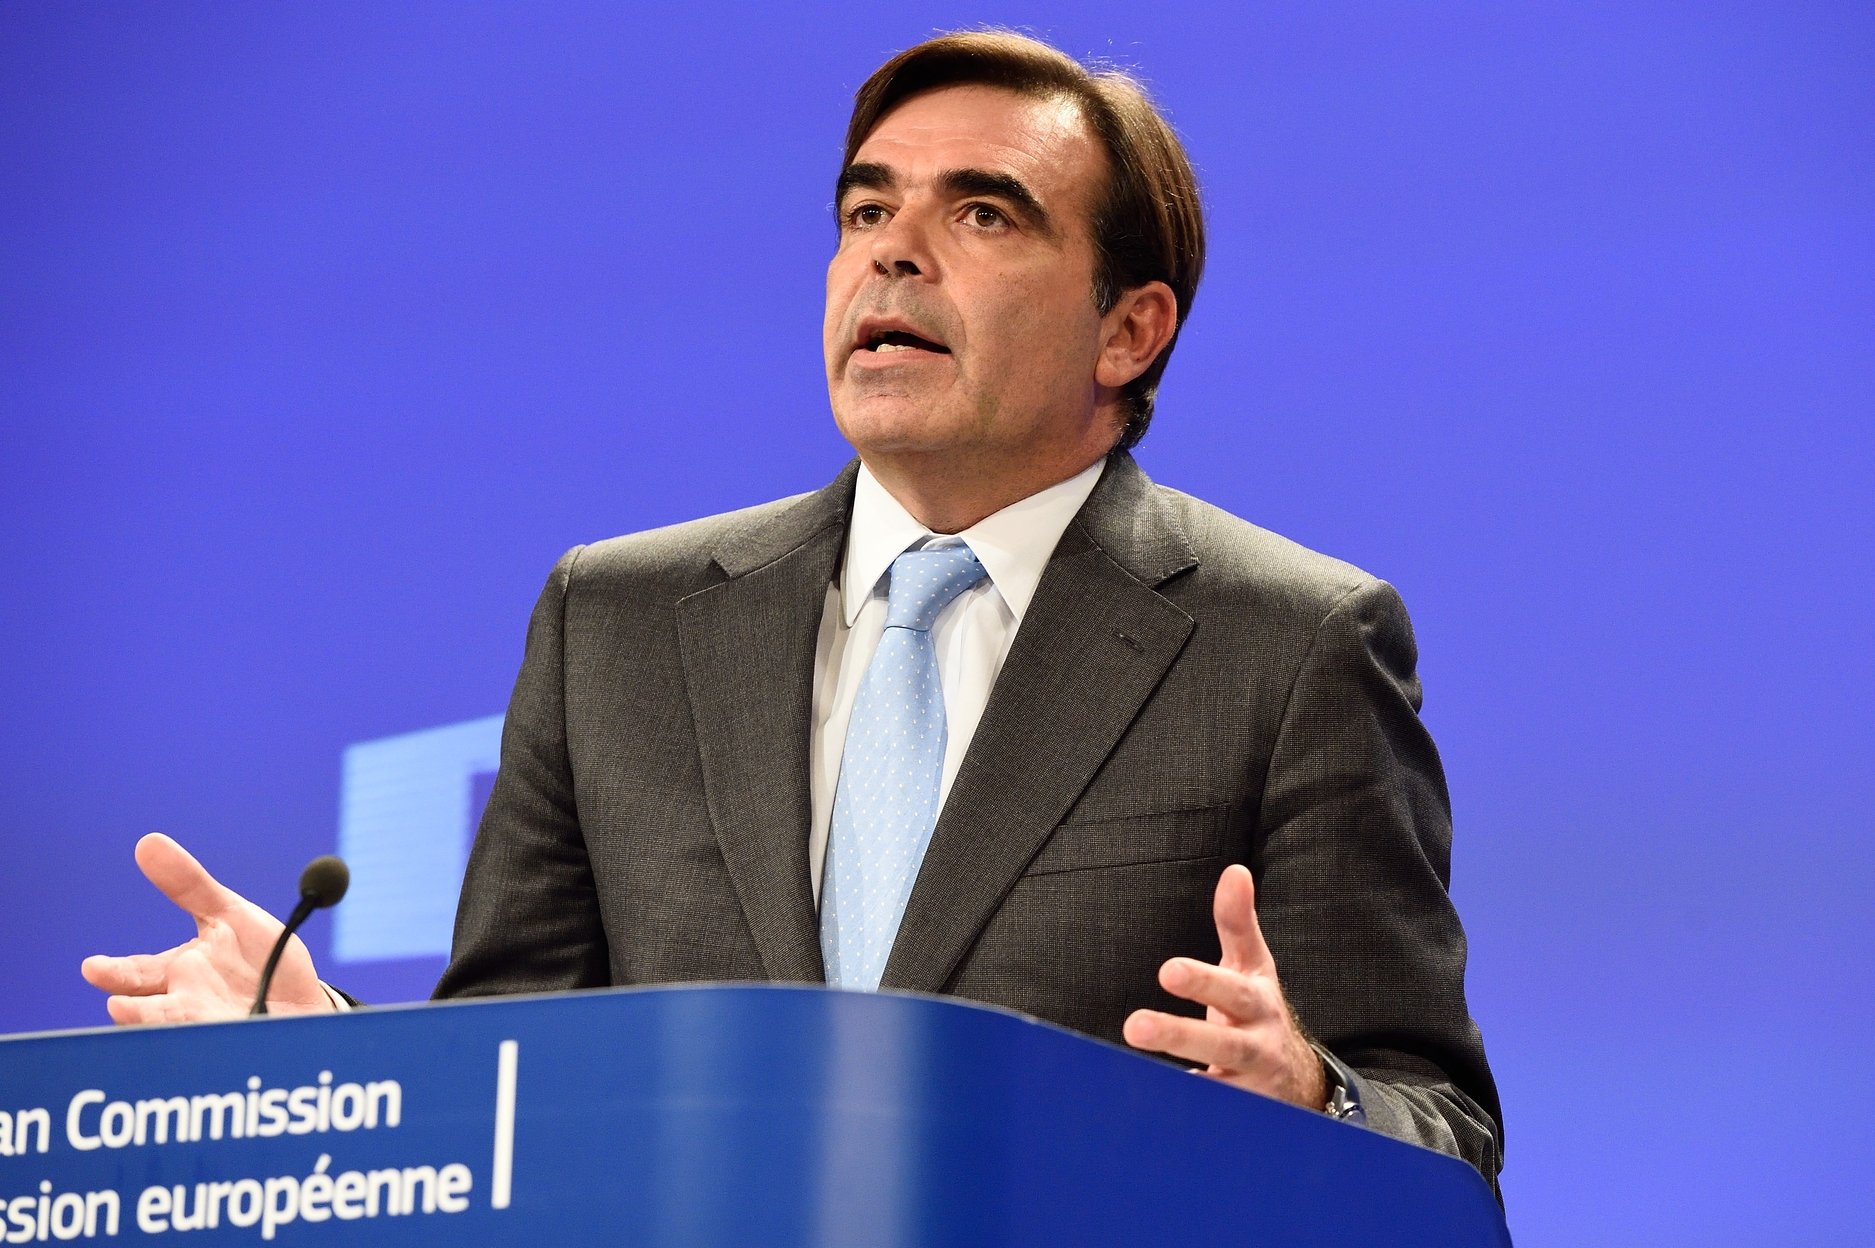 Κομισιόν: Δεν πρέπει να χαθεί το "μομέντουμ - καταγραφή προόδου στο επερχόμενο Eurogroup